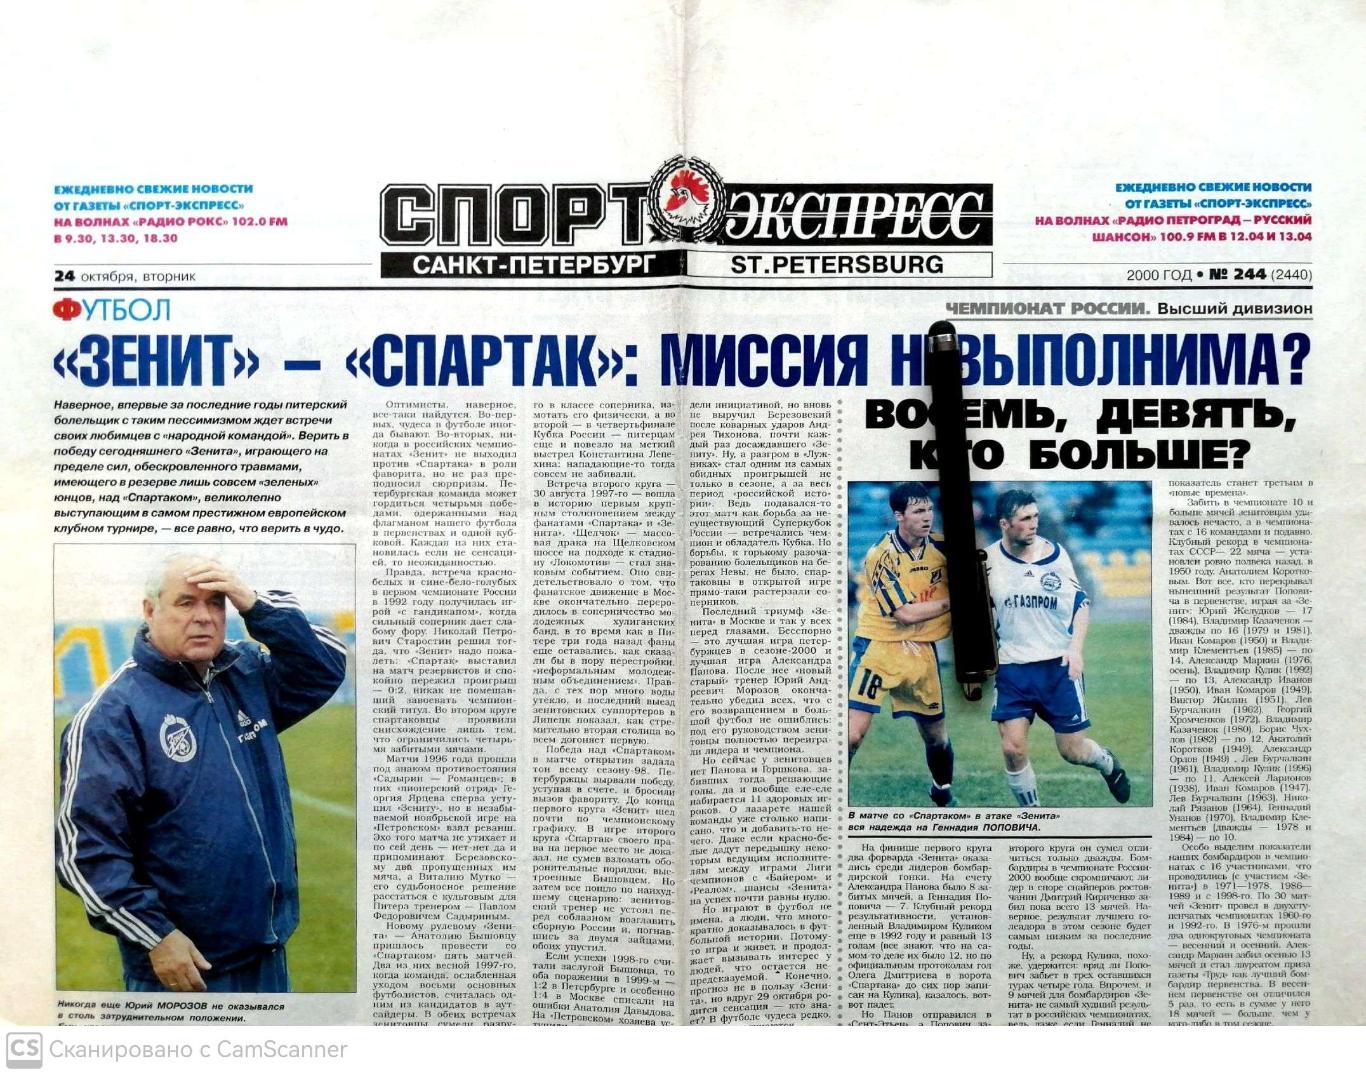 Газета Спорт-Экспресс в Санкт-Петербурге 24.10.2000 (накануне Зенит - Спартак)